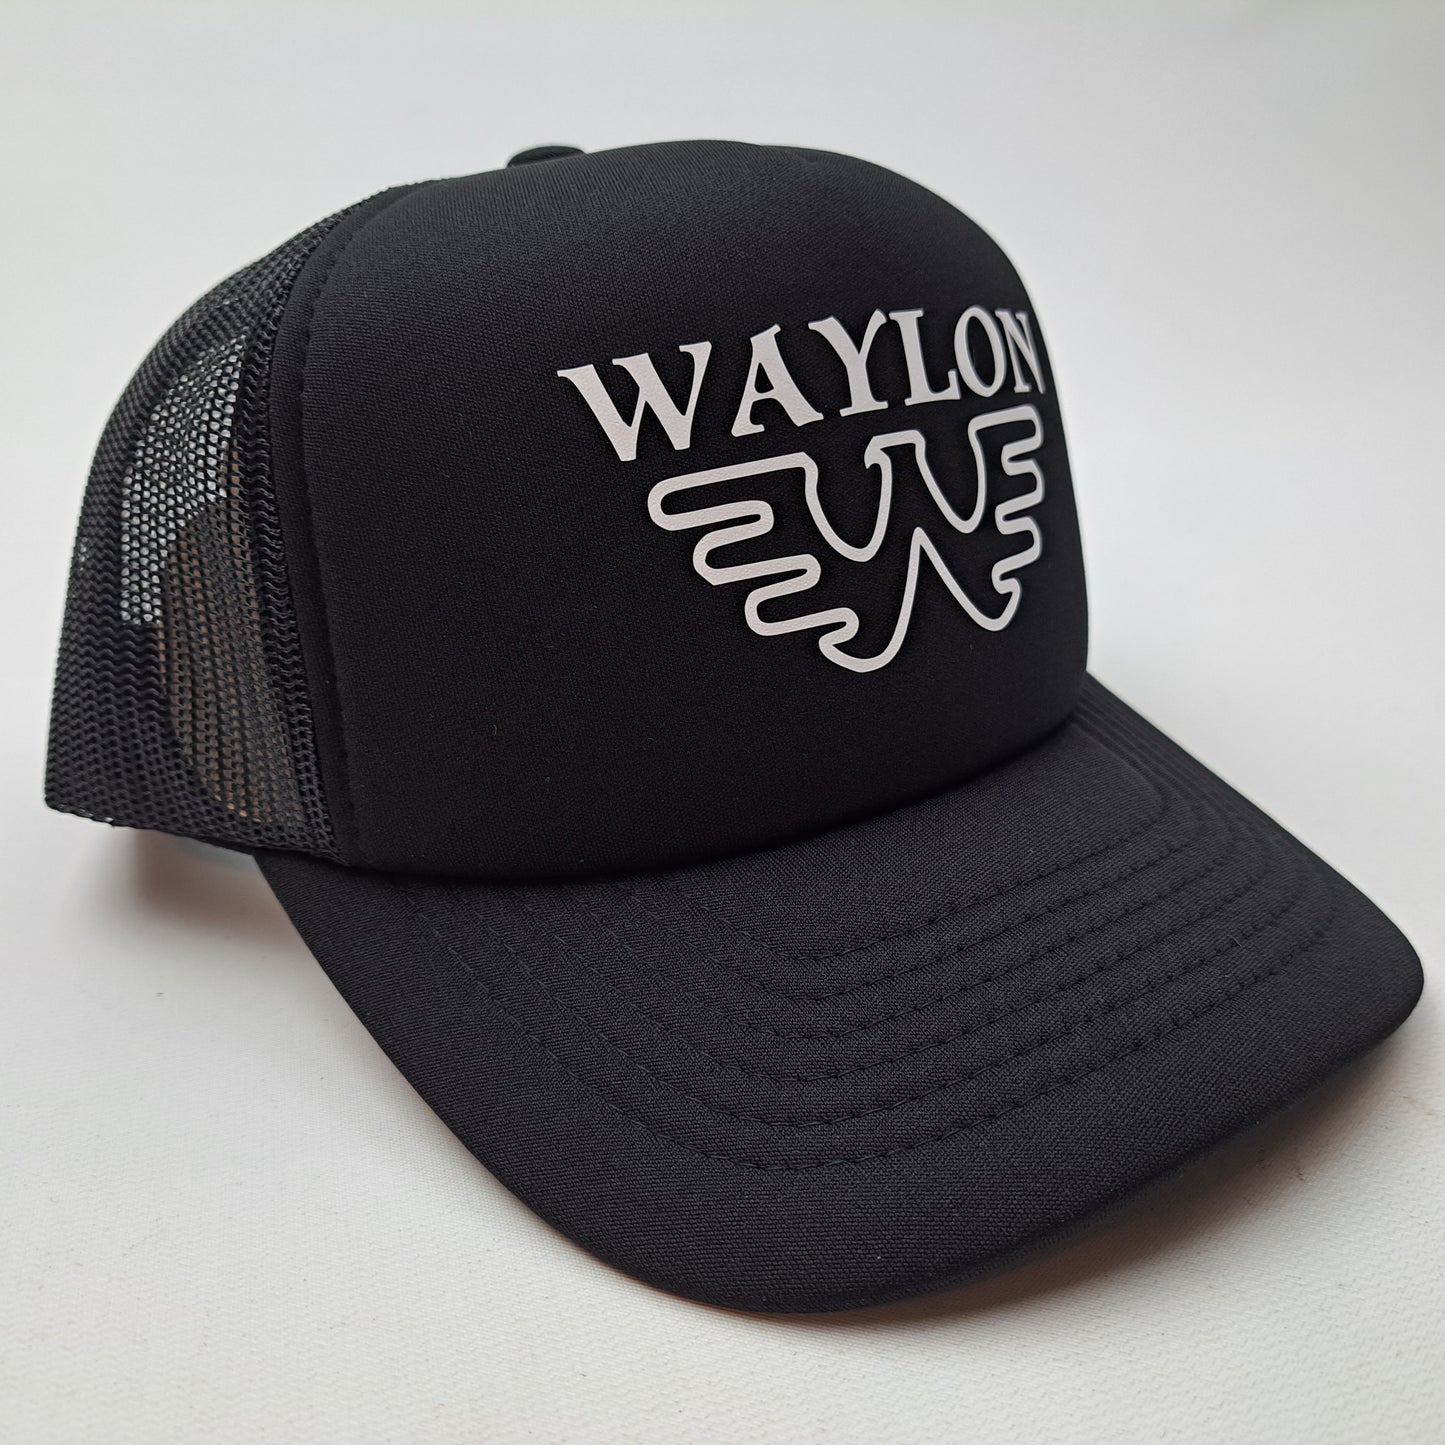 Waylon Jennings Foam Mesh Trucker Black snapback